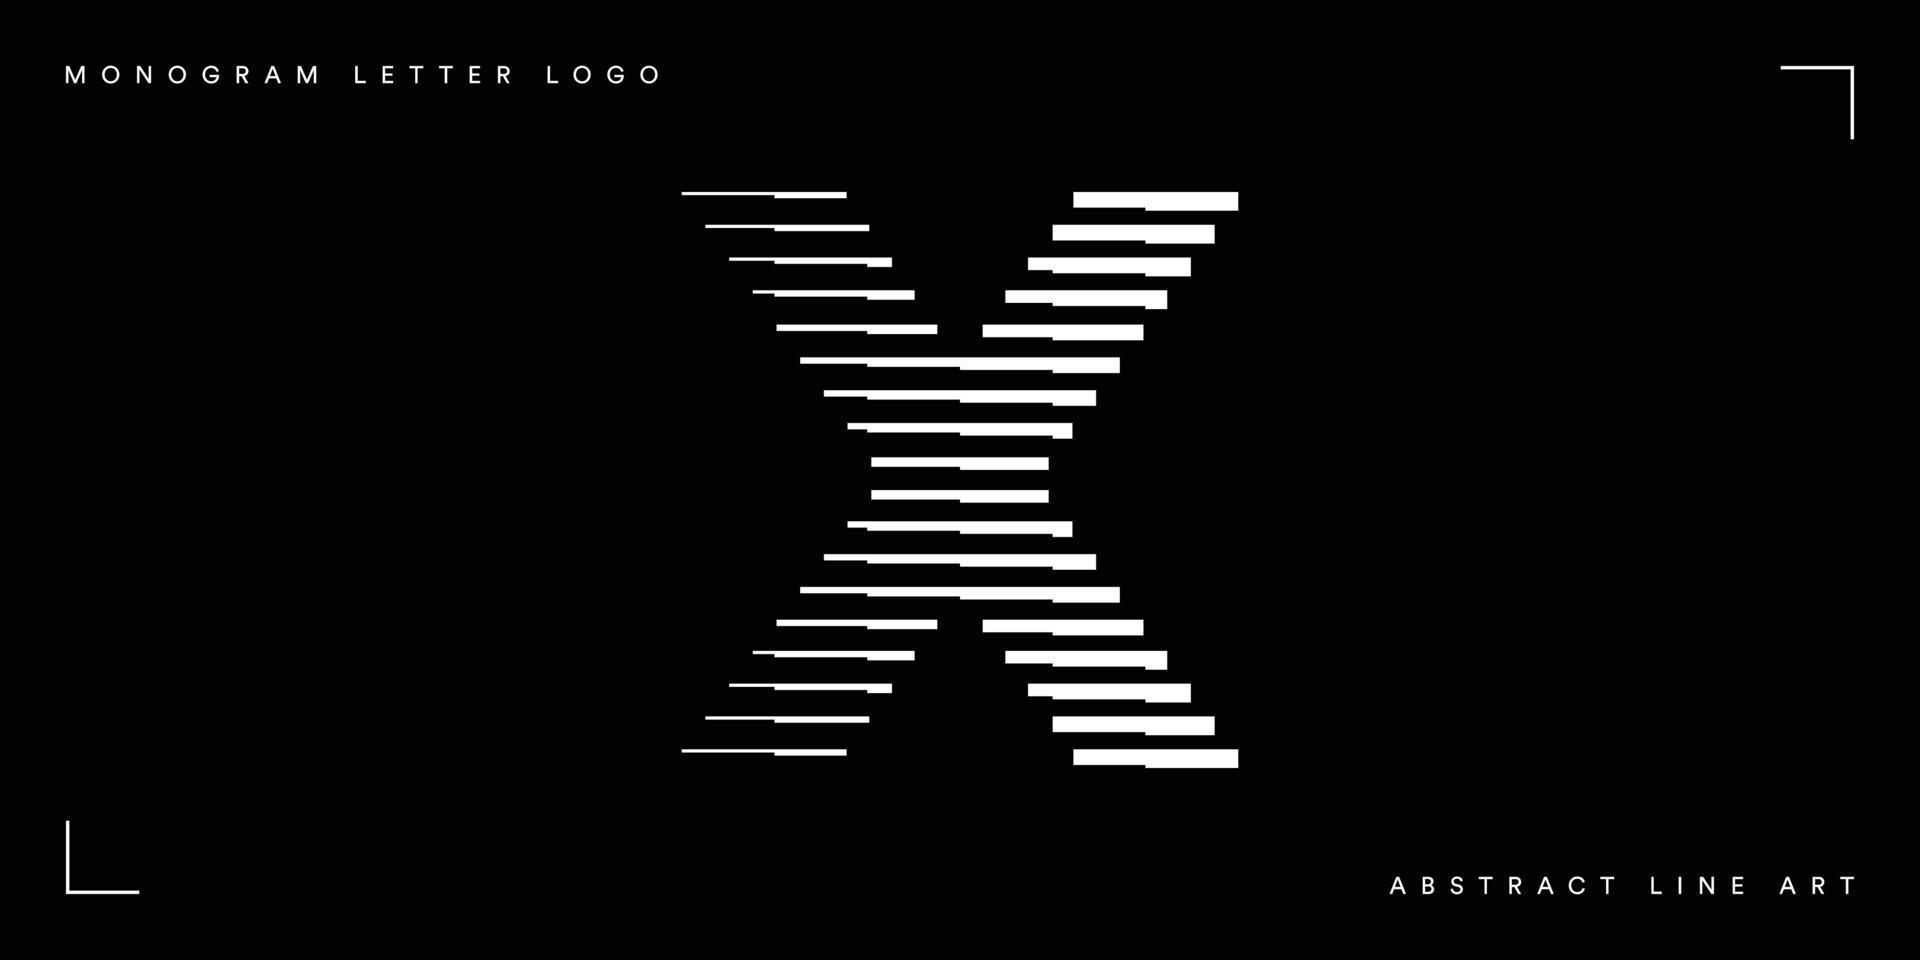 Abstract line art letter x monogram logo vector